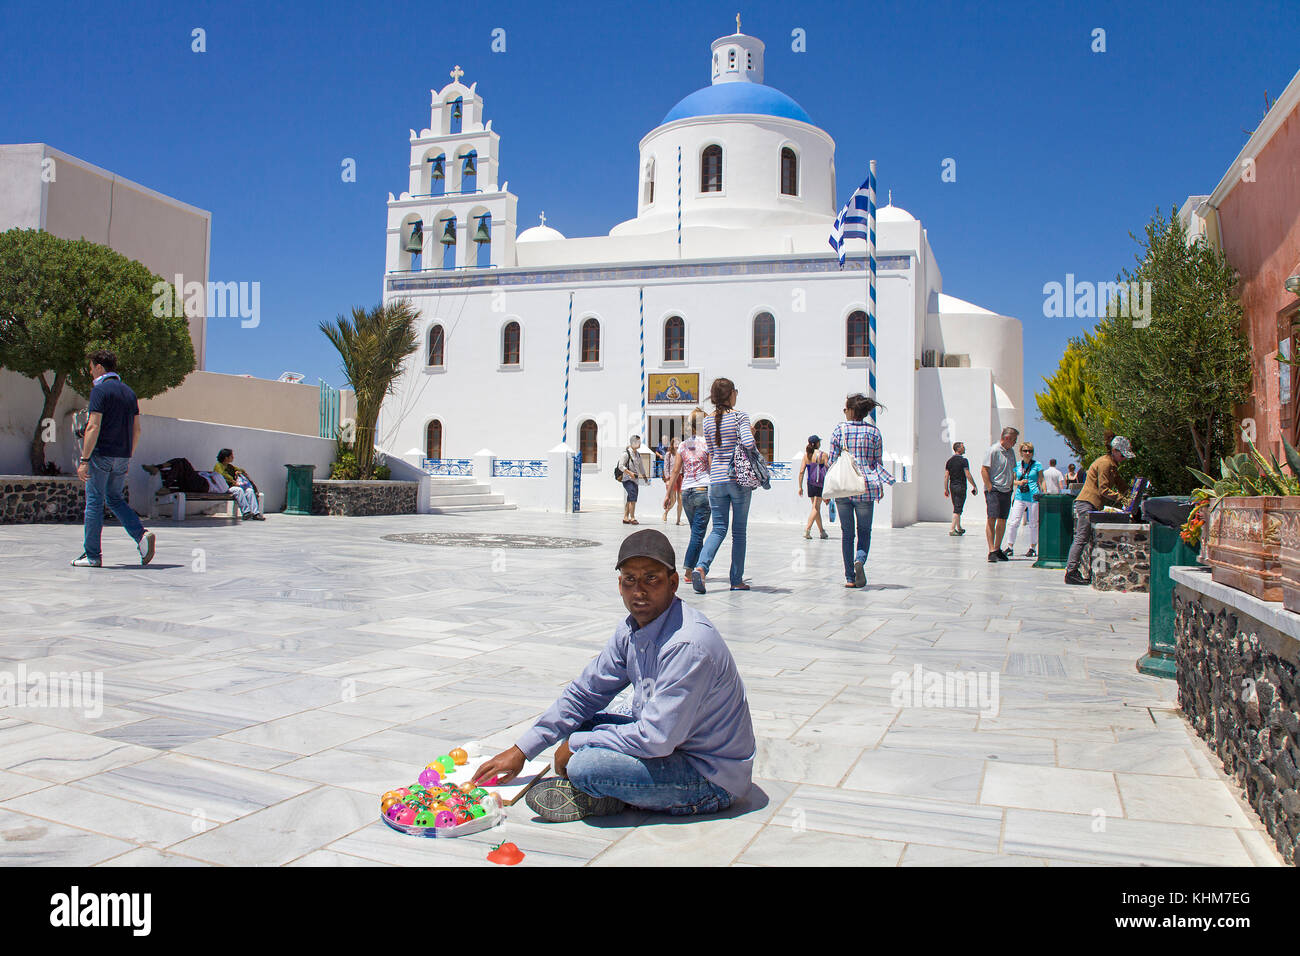 Venditore ambulante seduto alla chiesa panagia , chiesa ortodossa presso il villaggio di Oia, isola di Santorini, Cicladi, Egeo, Grecia Foto Stock